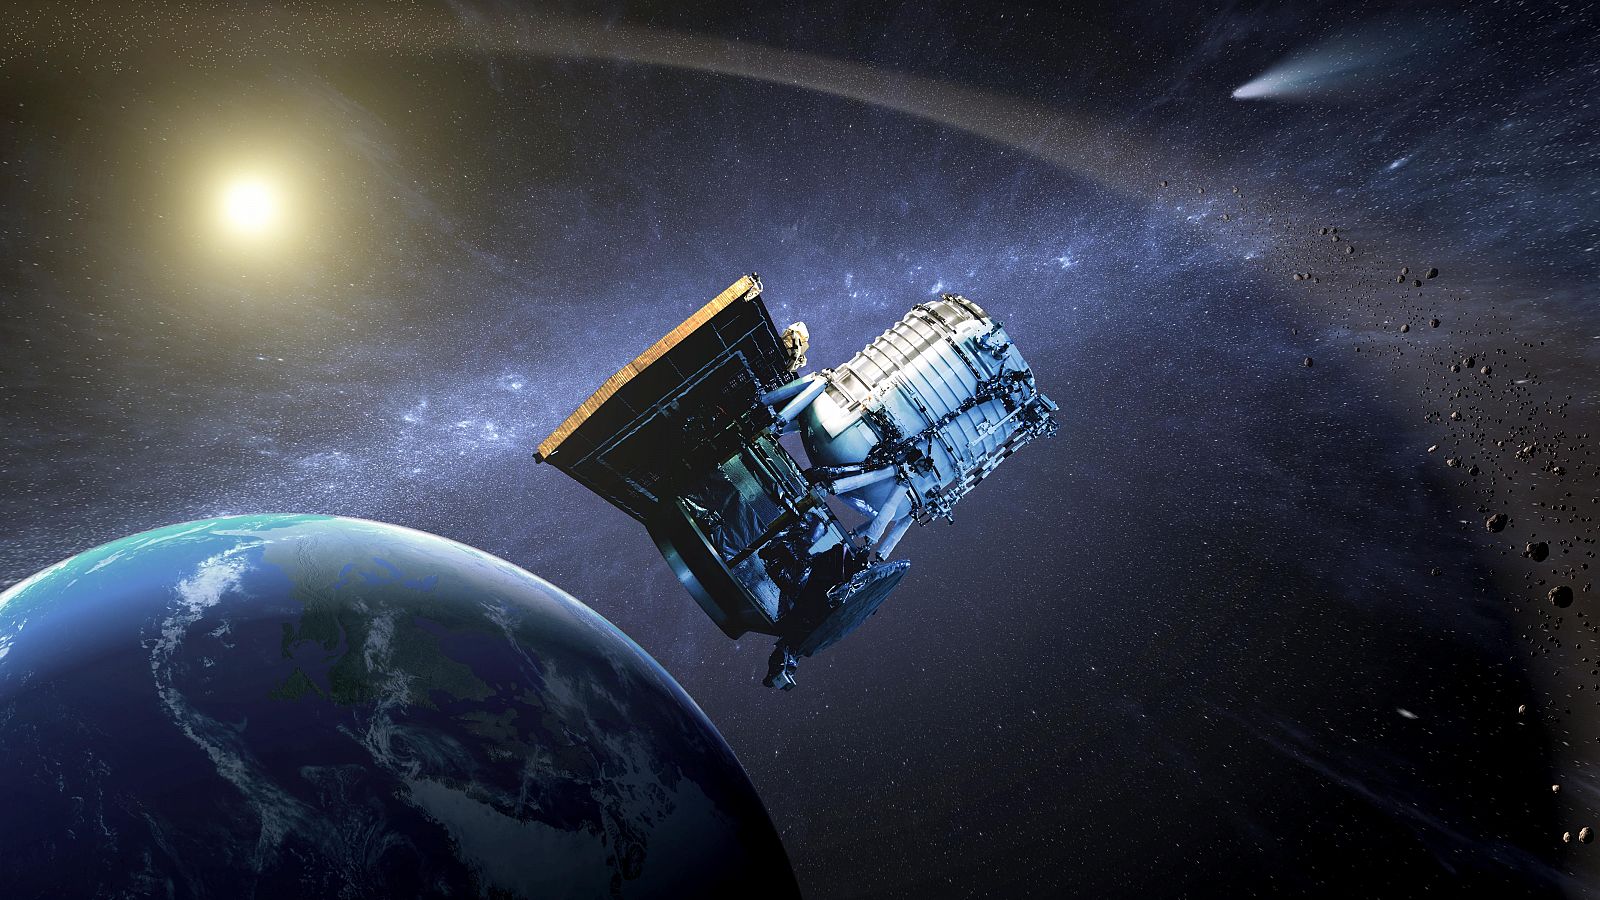 El explorador wise comenzará a trabajar el próximo mes con el objetivo de descubrir y caracterizar objetos cercanos a la Tierra (NEOs).